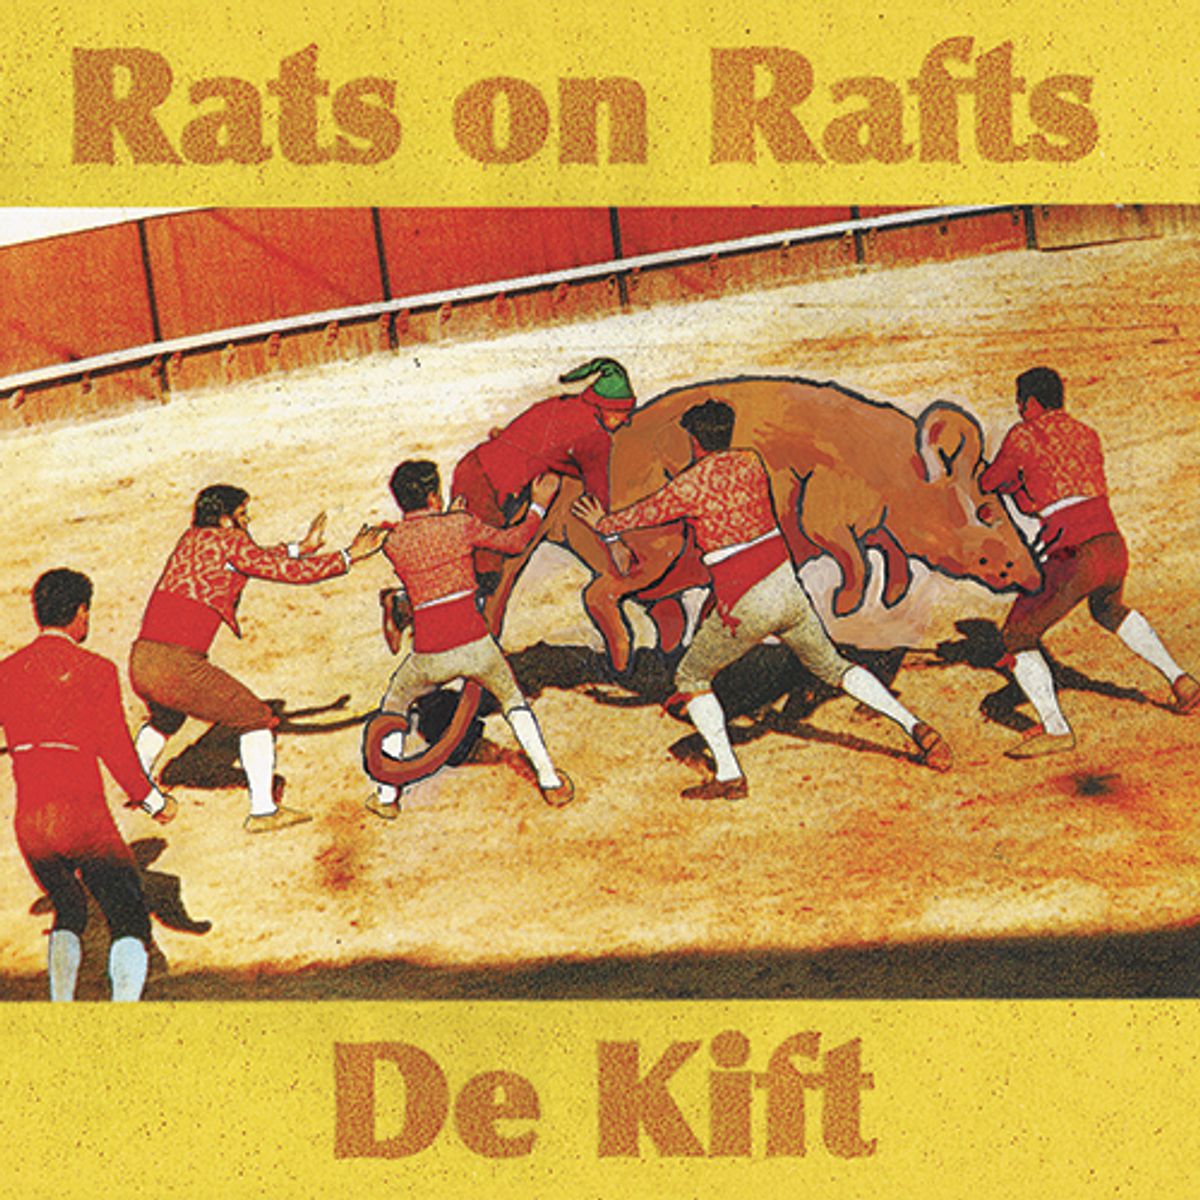 Rats On Rafts / De Kift